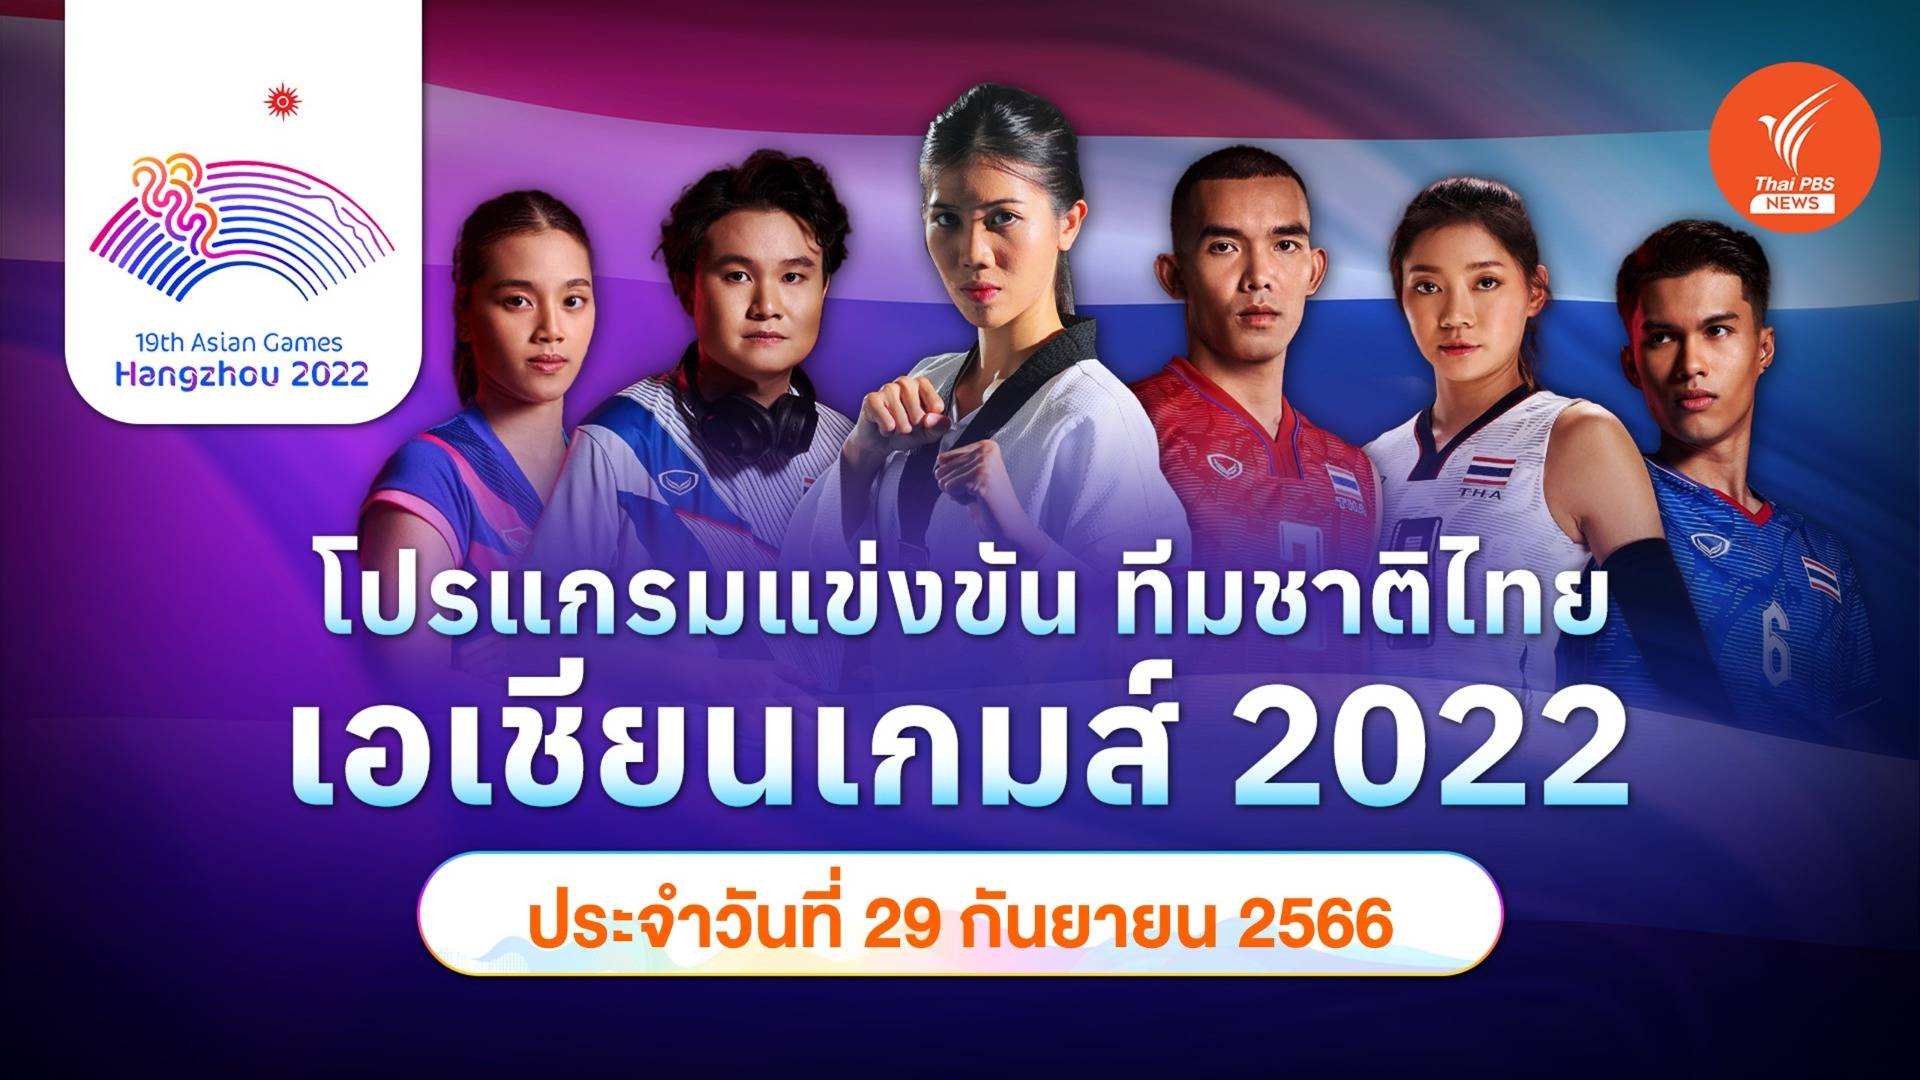 โปรแกรมการแข่งขัน เอเชียนเกมส์ 2022 ทัพนักกีฬาไทย วันที่ 29 ก.ย.66 ไทยพีบีเอส ถ่ายทอดสดเอเชียนเกมส์